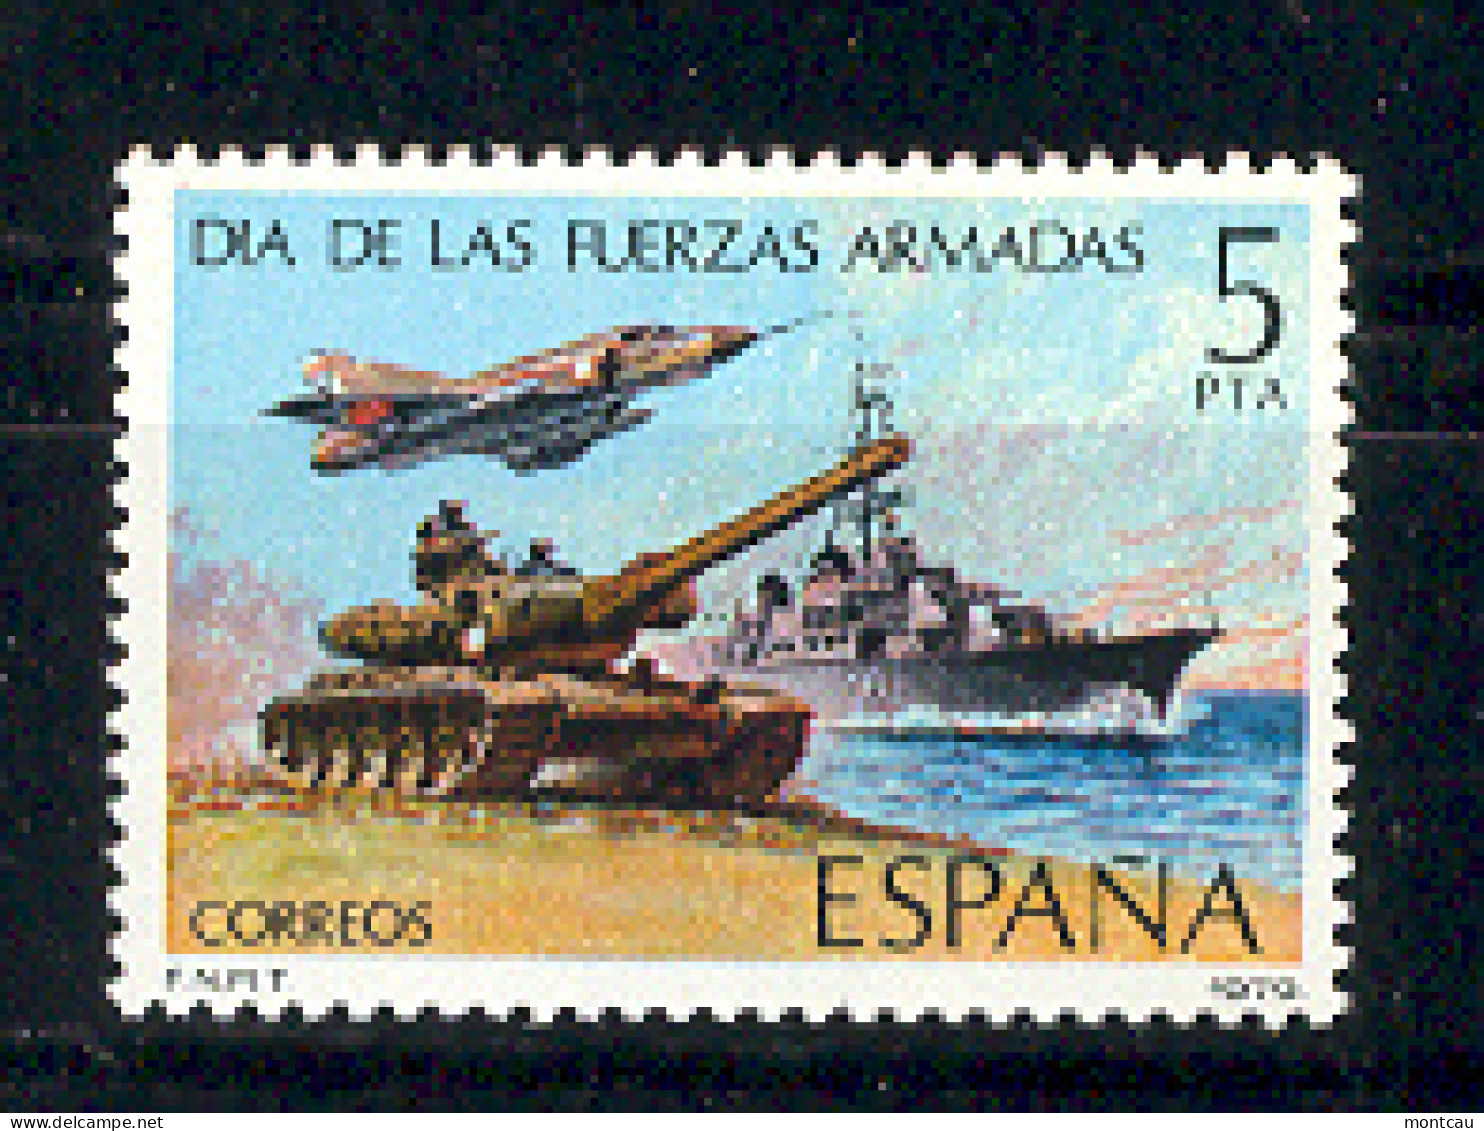 Spain. 1979. Fuerzas Armadas Ed 2525 (**) - Ungebraucht